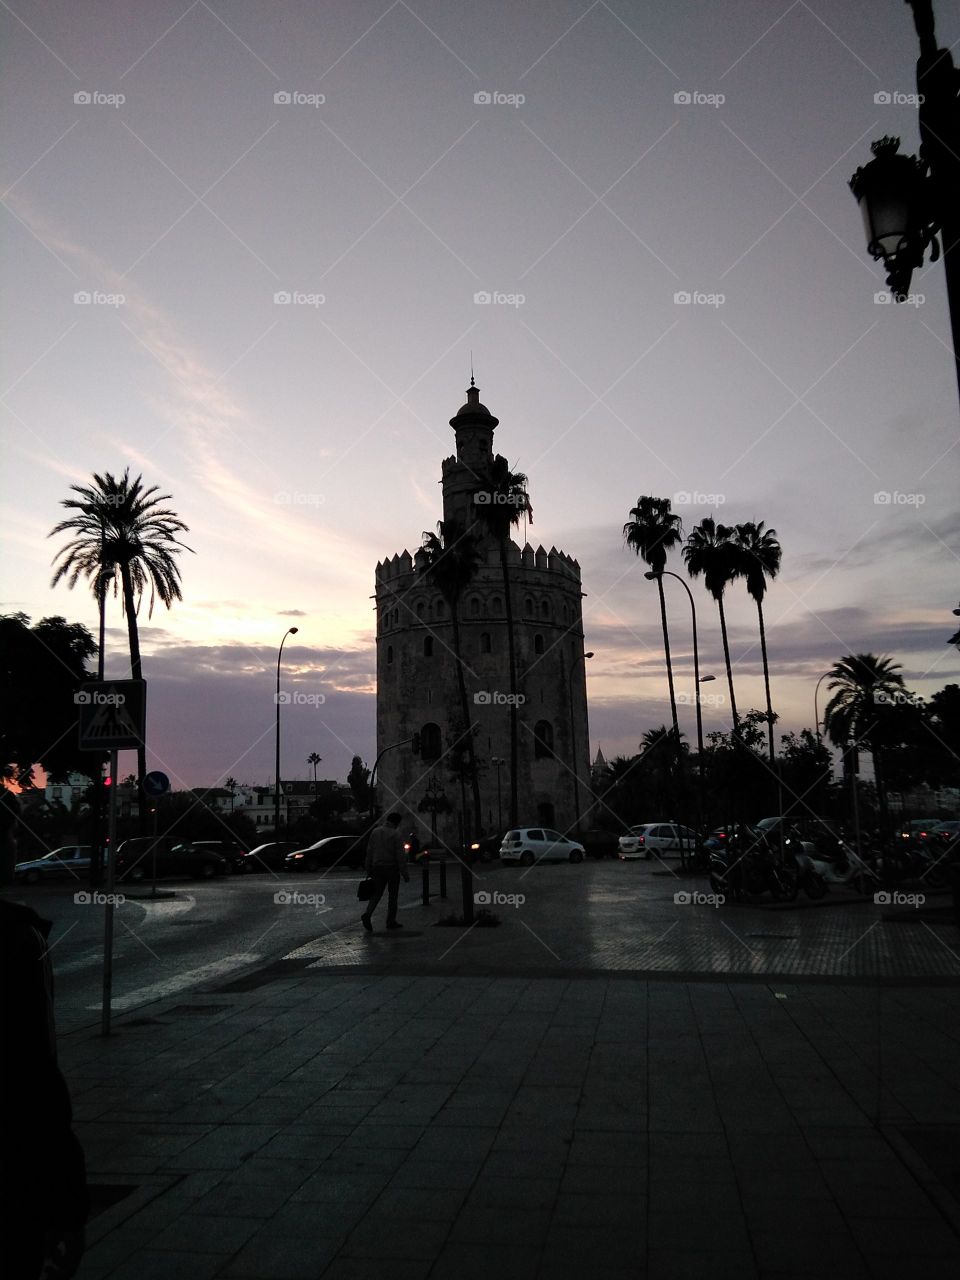 La Torre de Sevilla